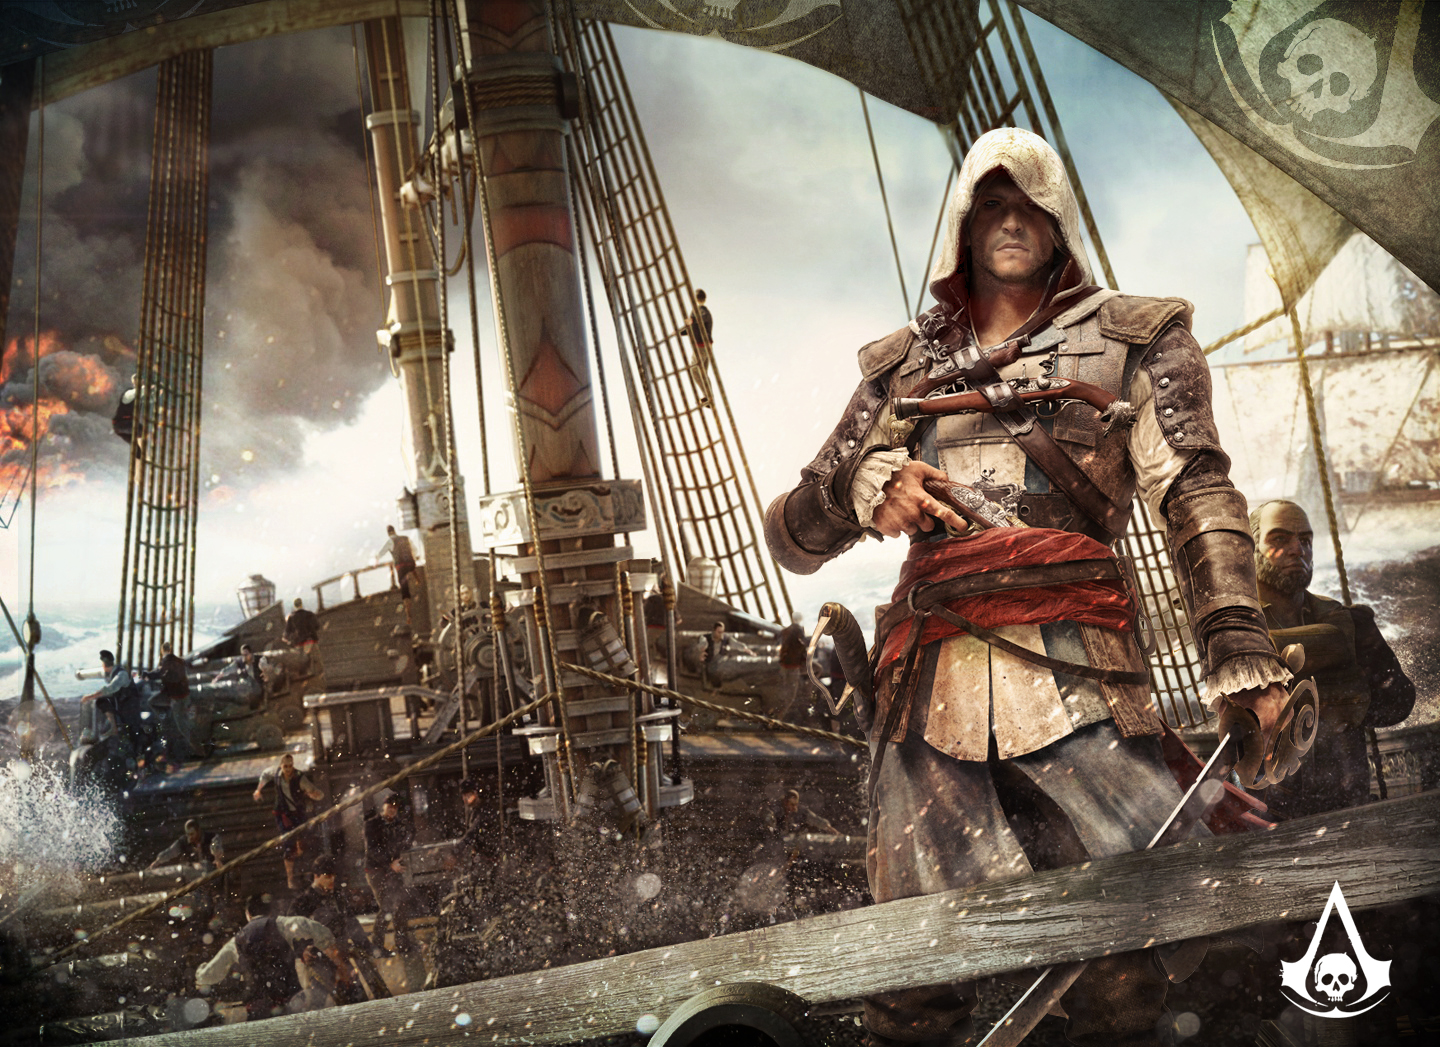 Franquia Assassin's Creed já vendeu mais de 73 milhões de cópias